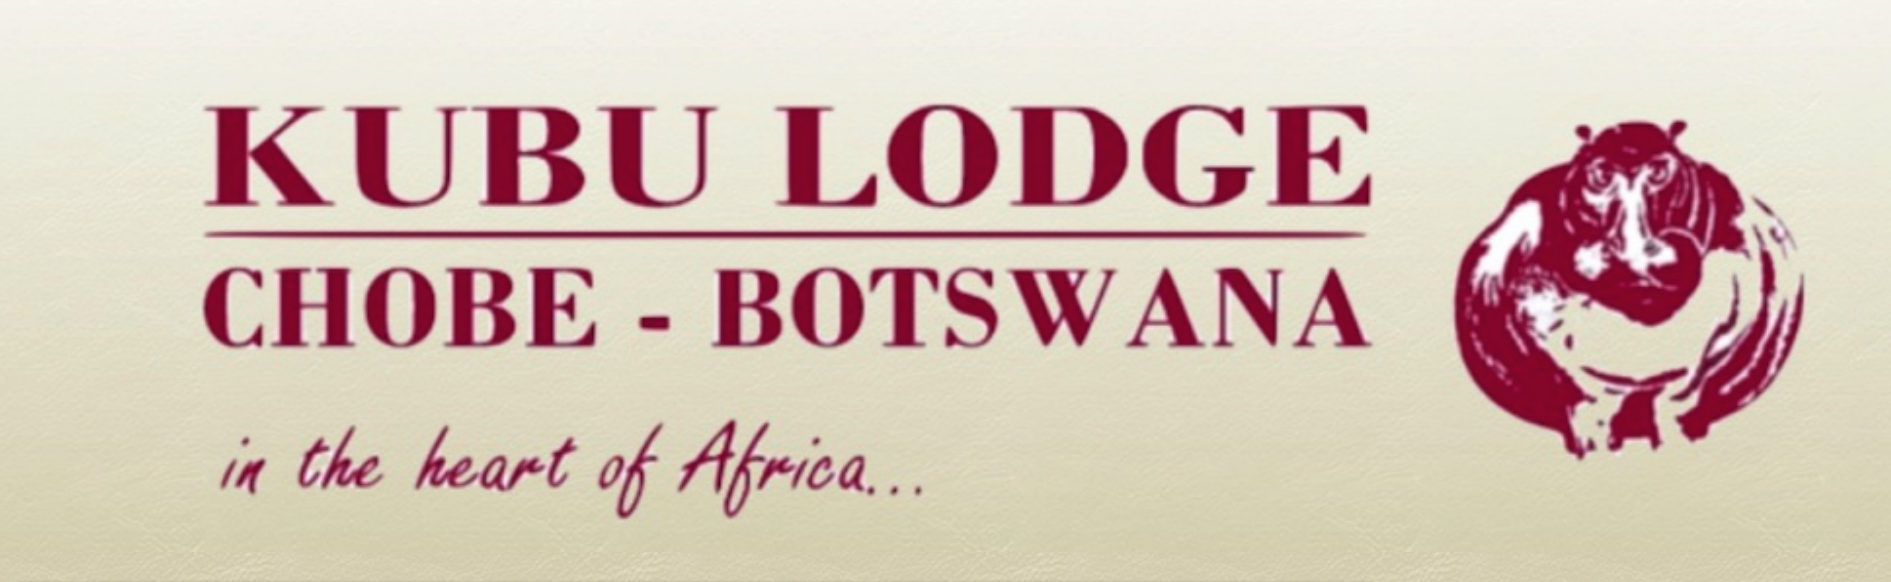 Kubu Lodge, Chobe - Botswana